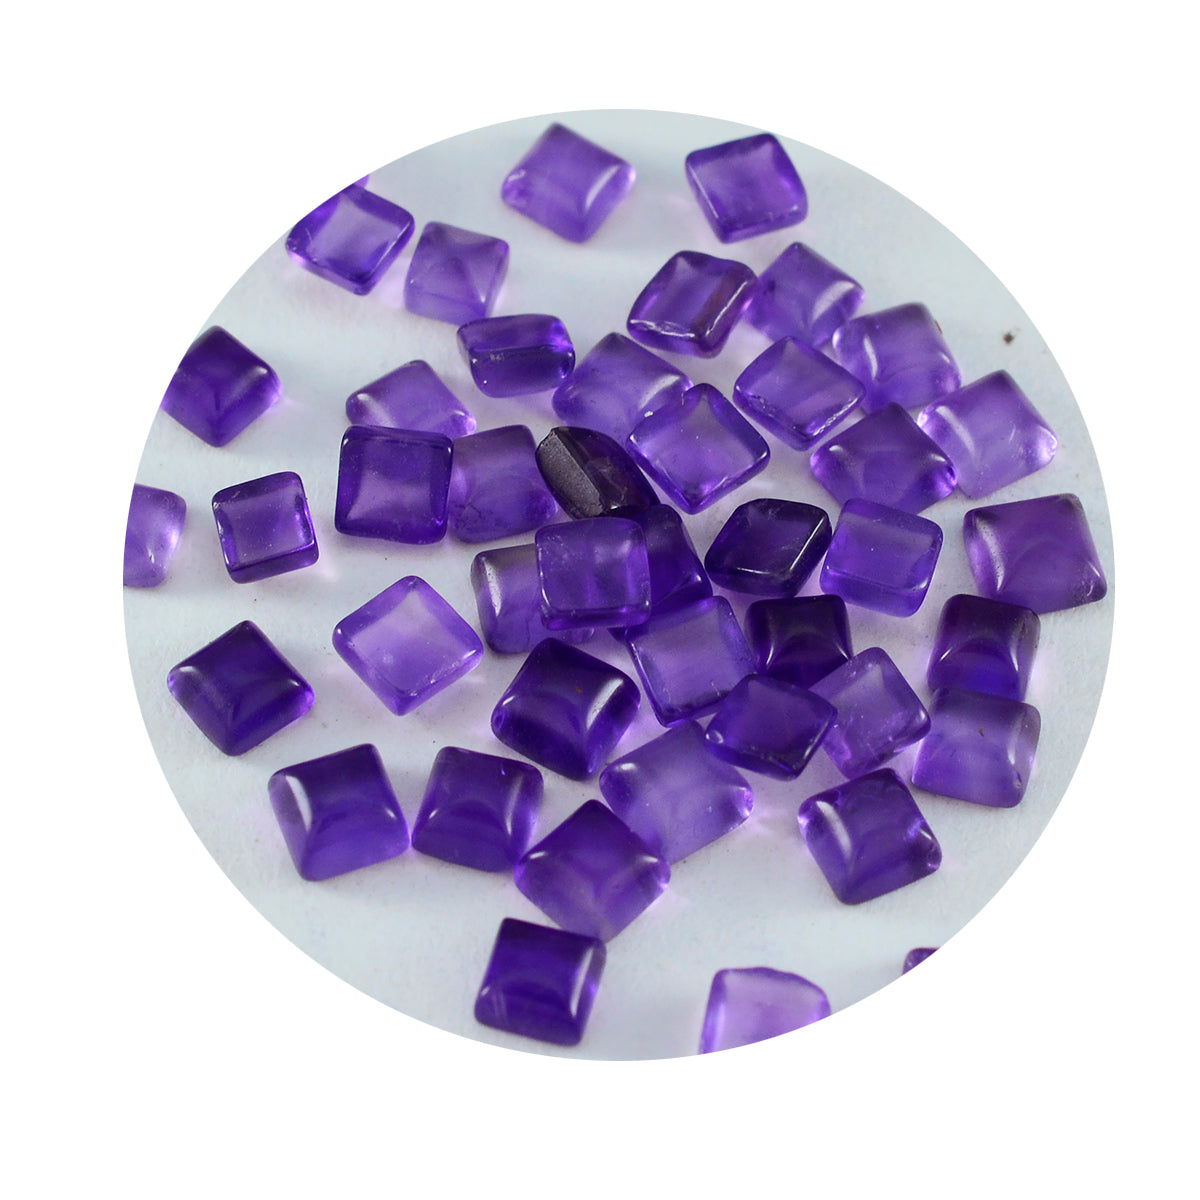 riyogems 1 шт. фиолетовый аметист кабошон 4x4 мм квадратной формы хорошее качество свободный драгоценный камень